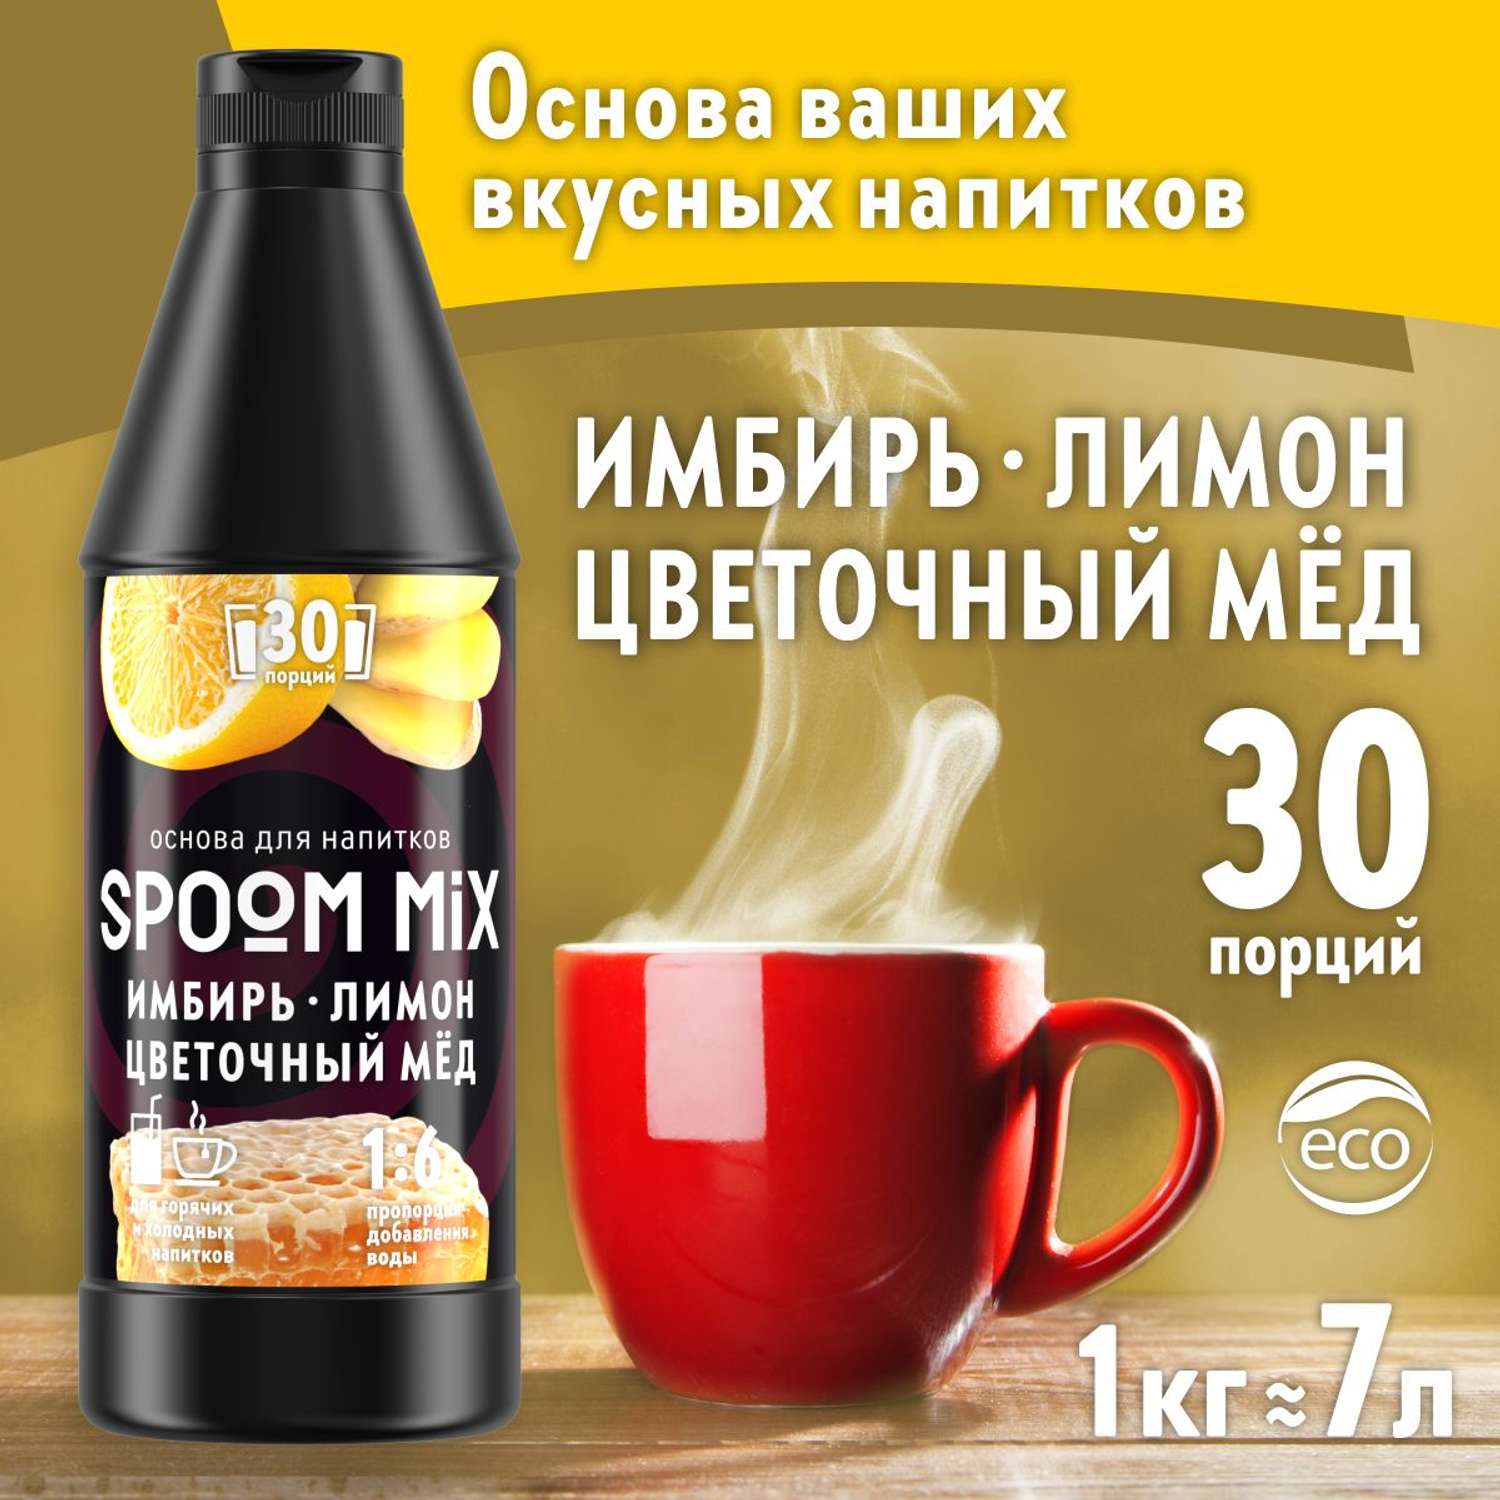 Основа для напитков SPOOM MIX Имбирь лимон цветочный мёд 1 кг - фото 1